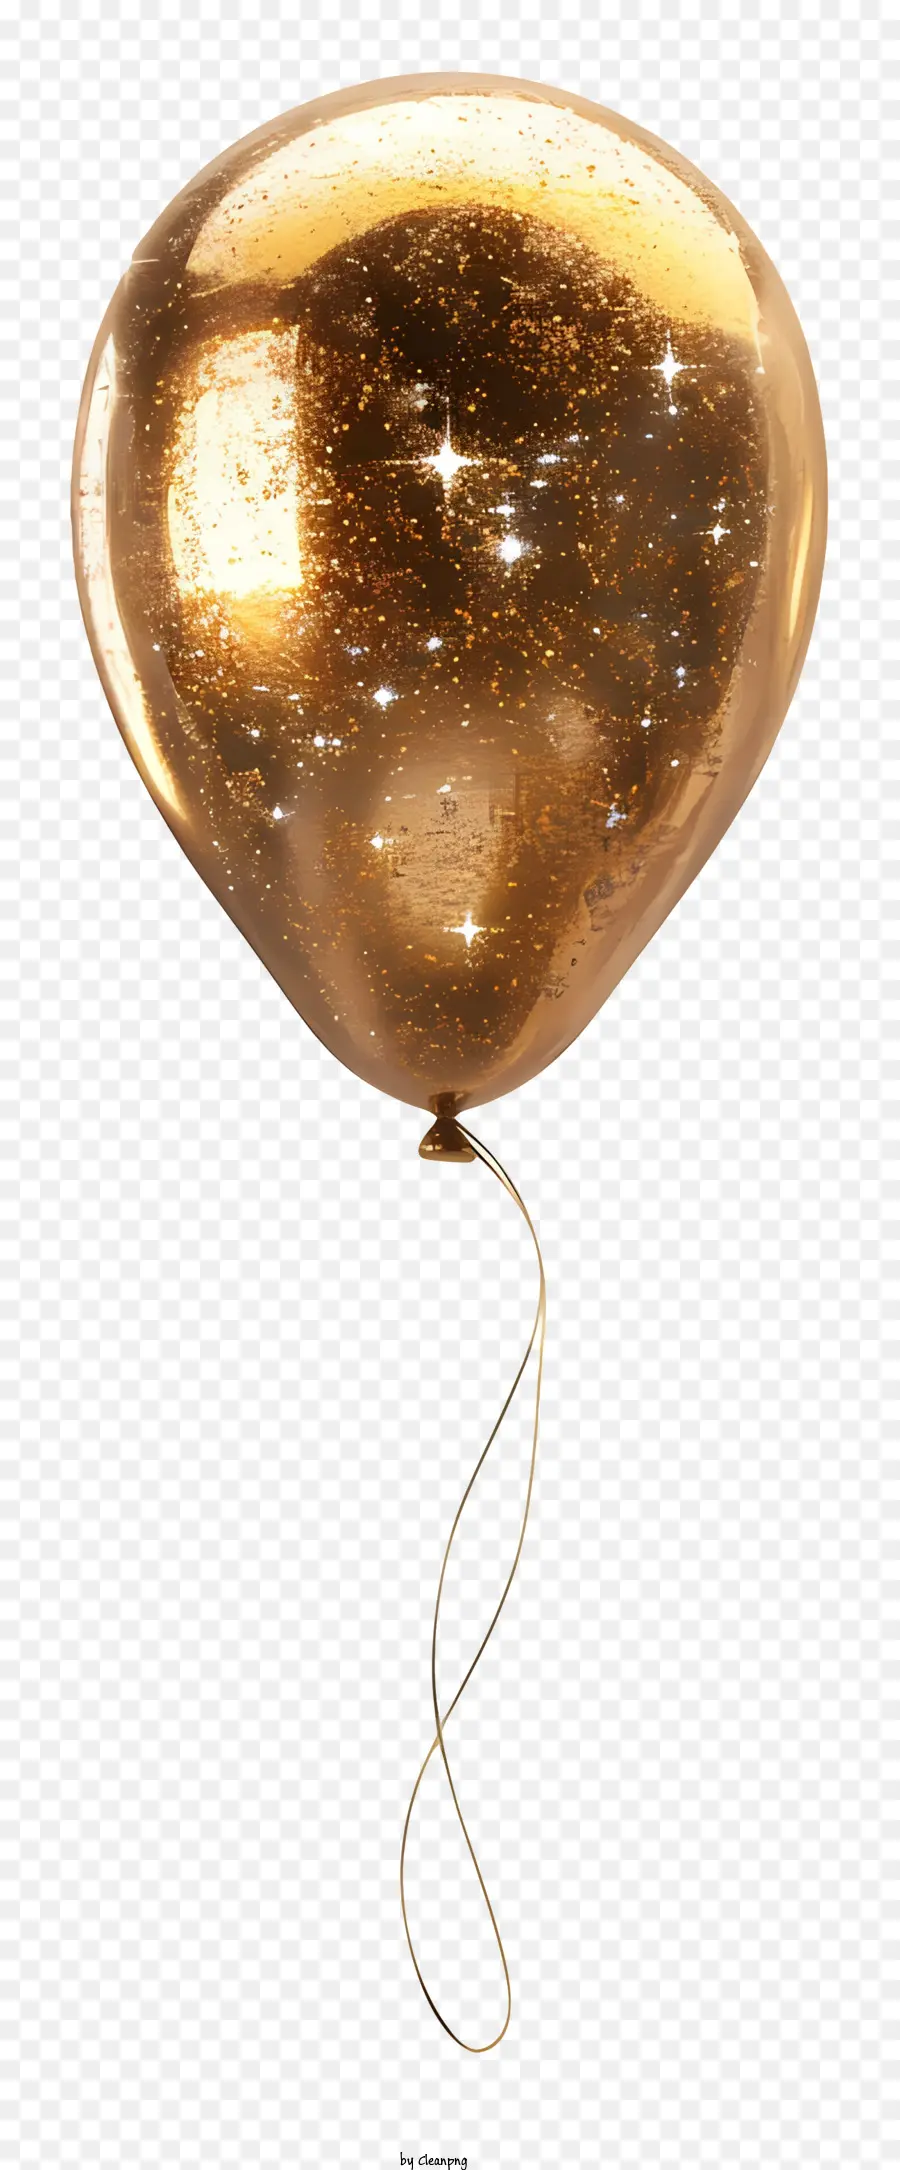 gold Ballon - Goldener glitzernder eiförmiger Ballon mit Lichtern im Inneren